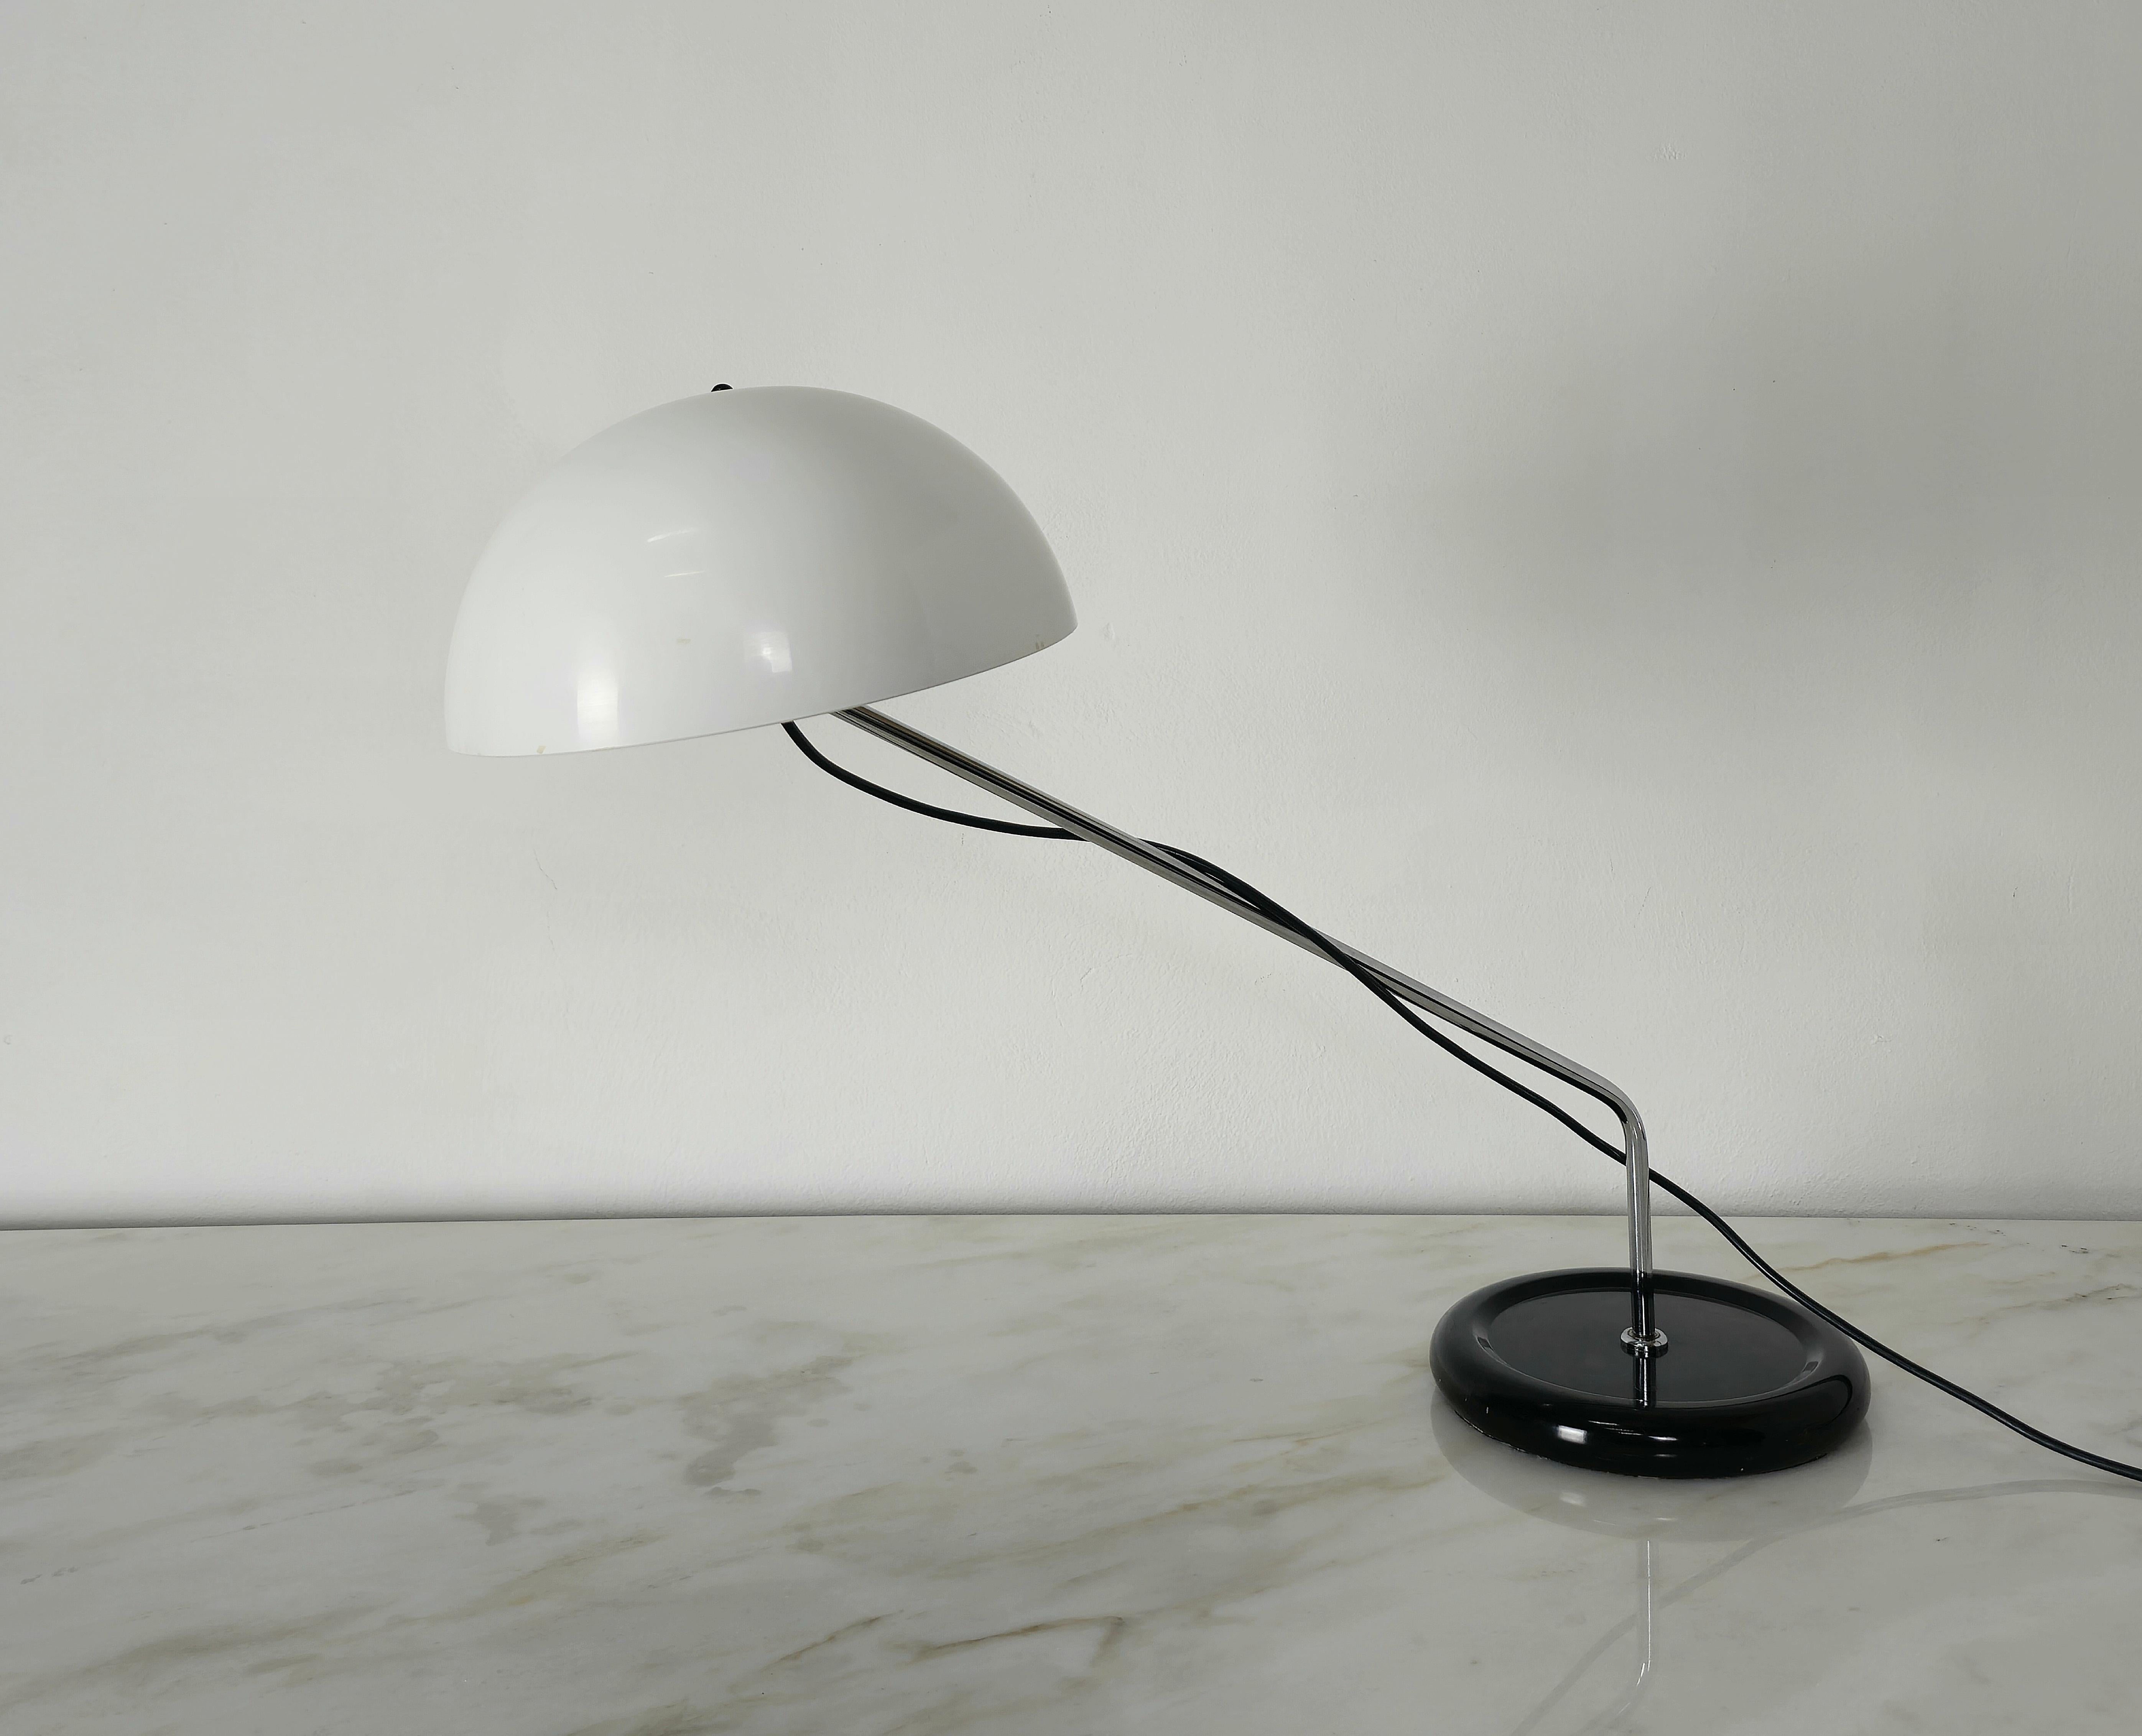 lampe italienisches design